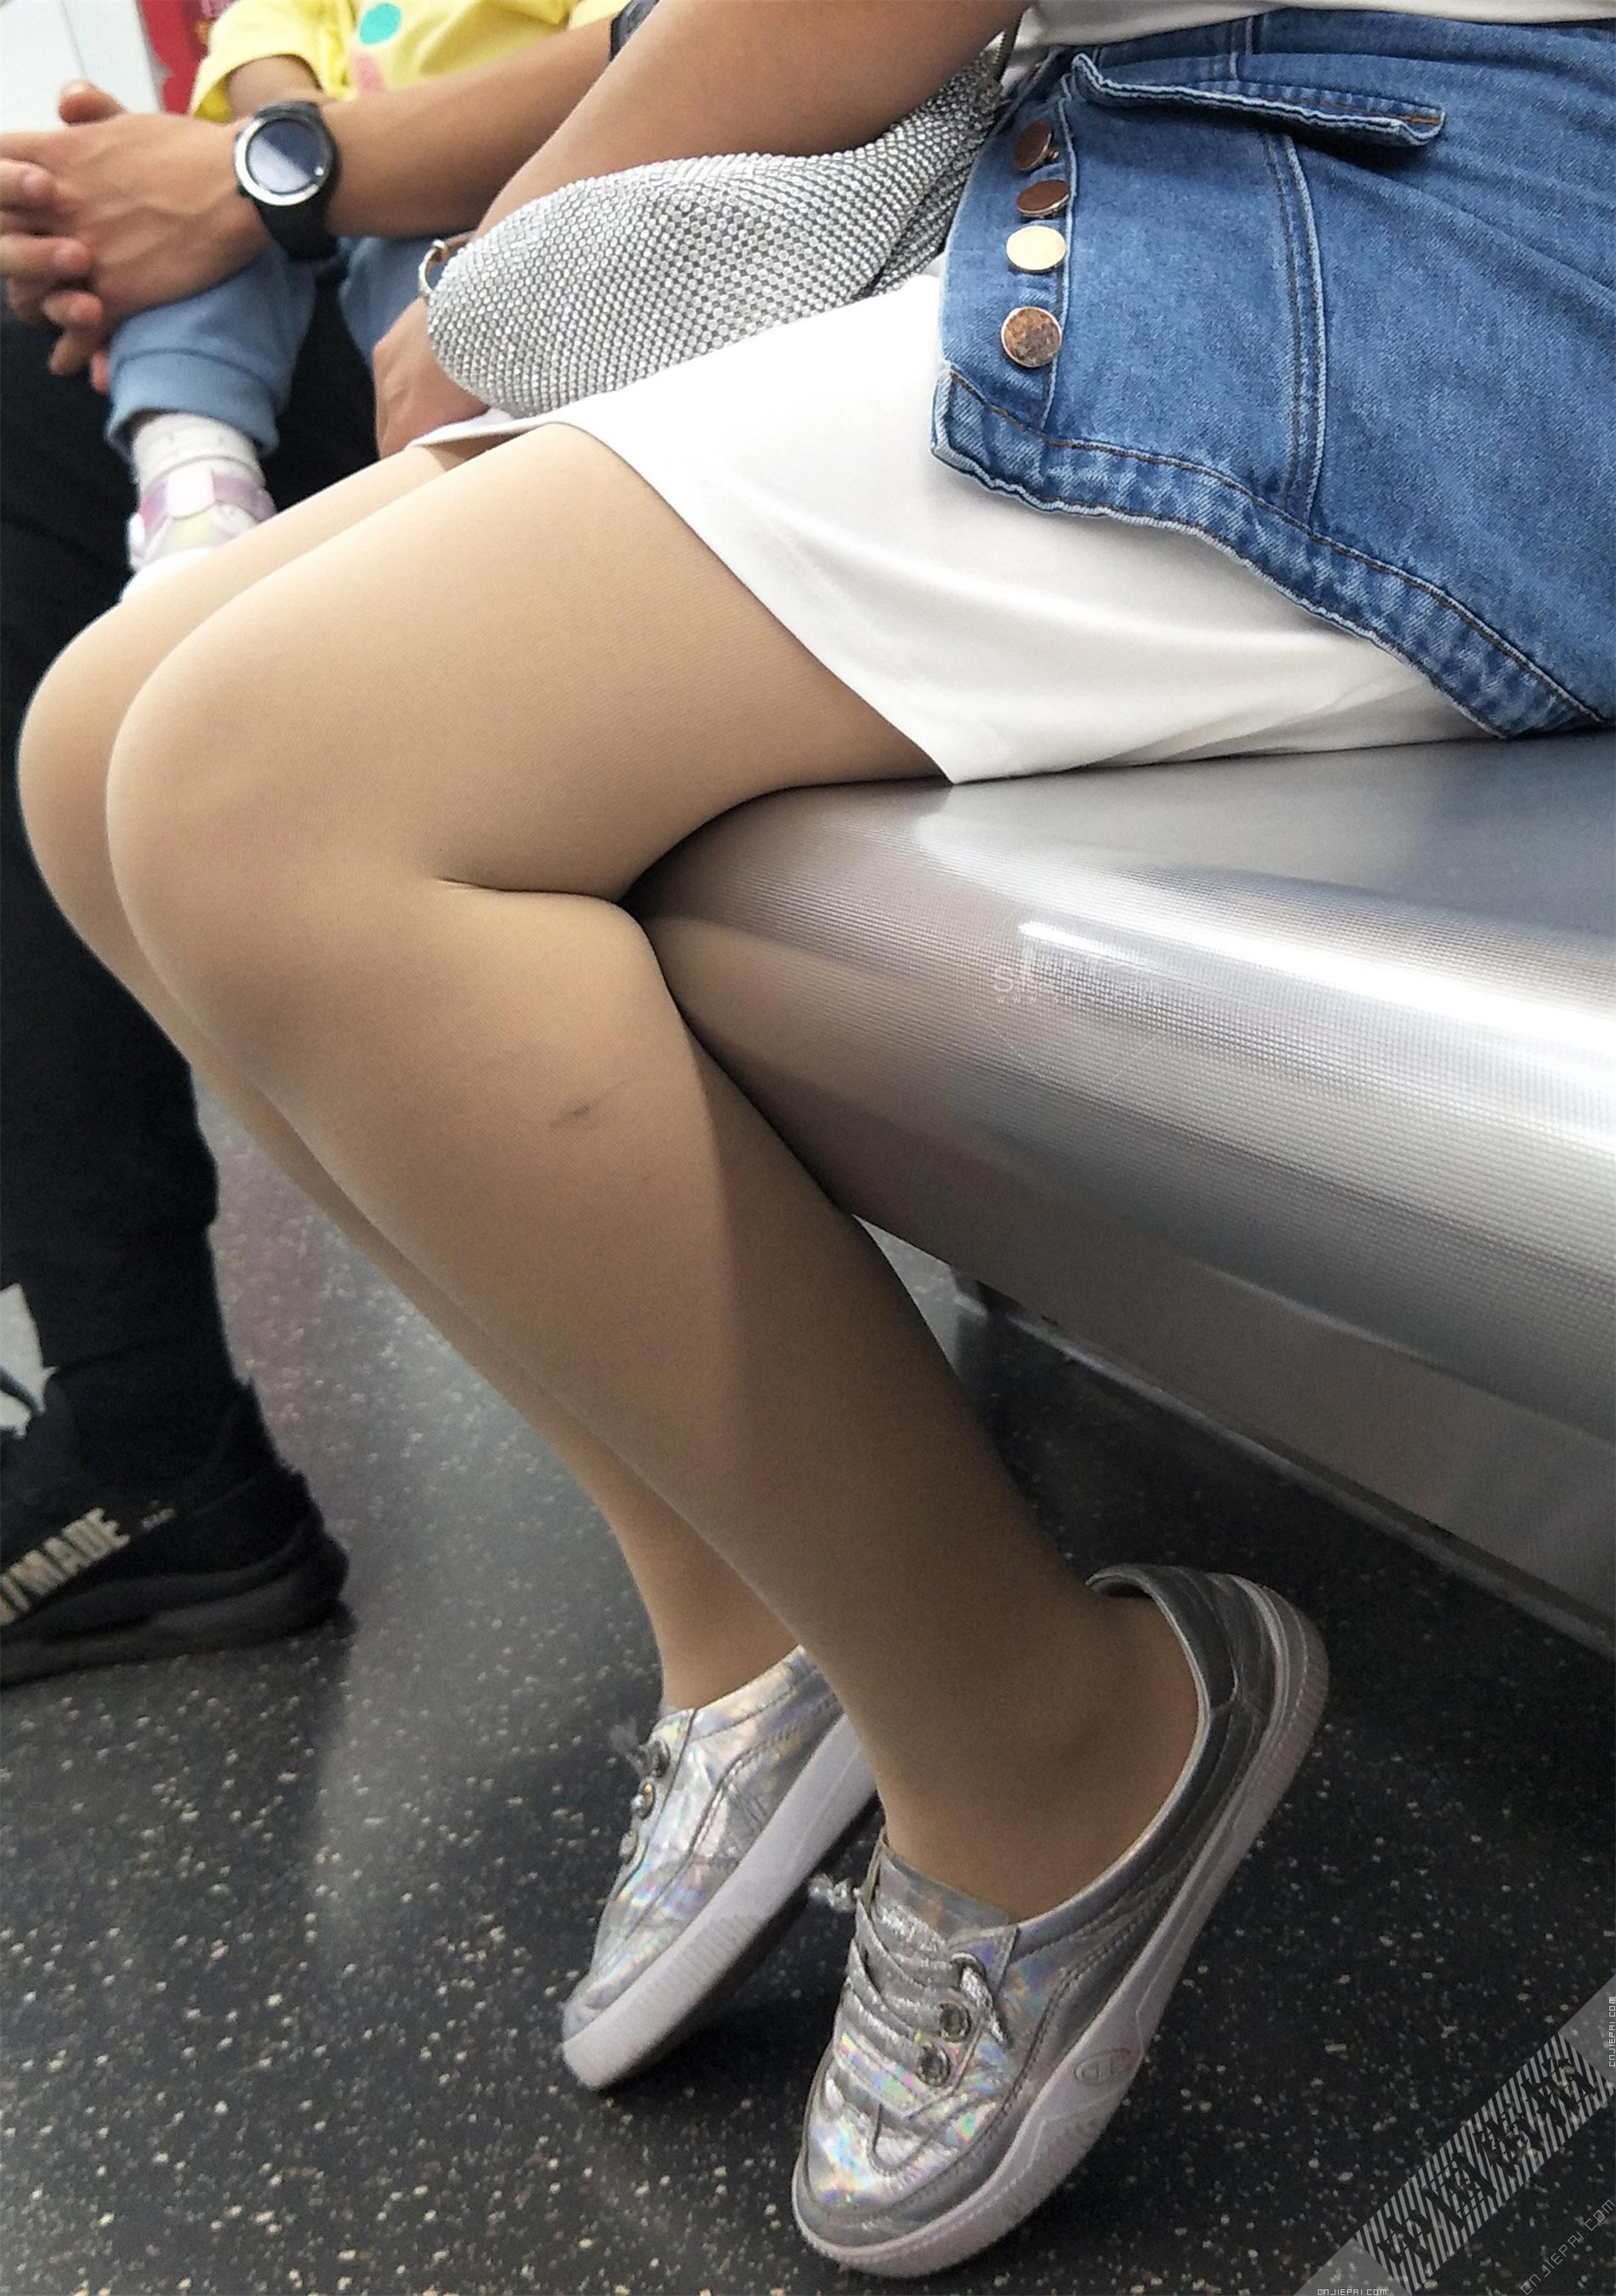 地铁里的短裙厚肉丝丰满少妇 图6